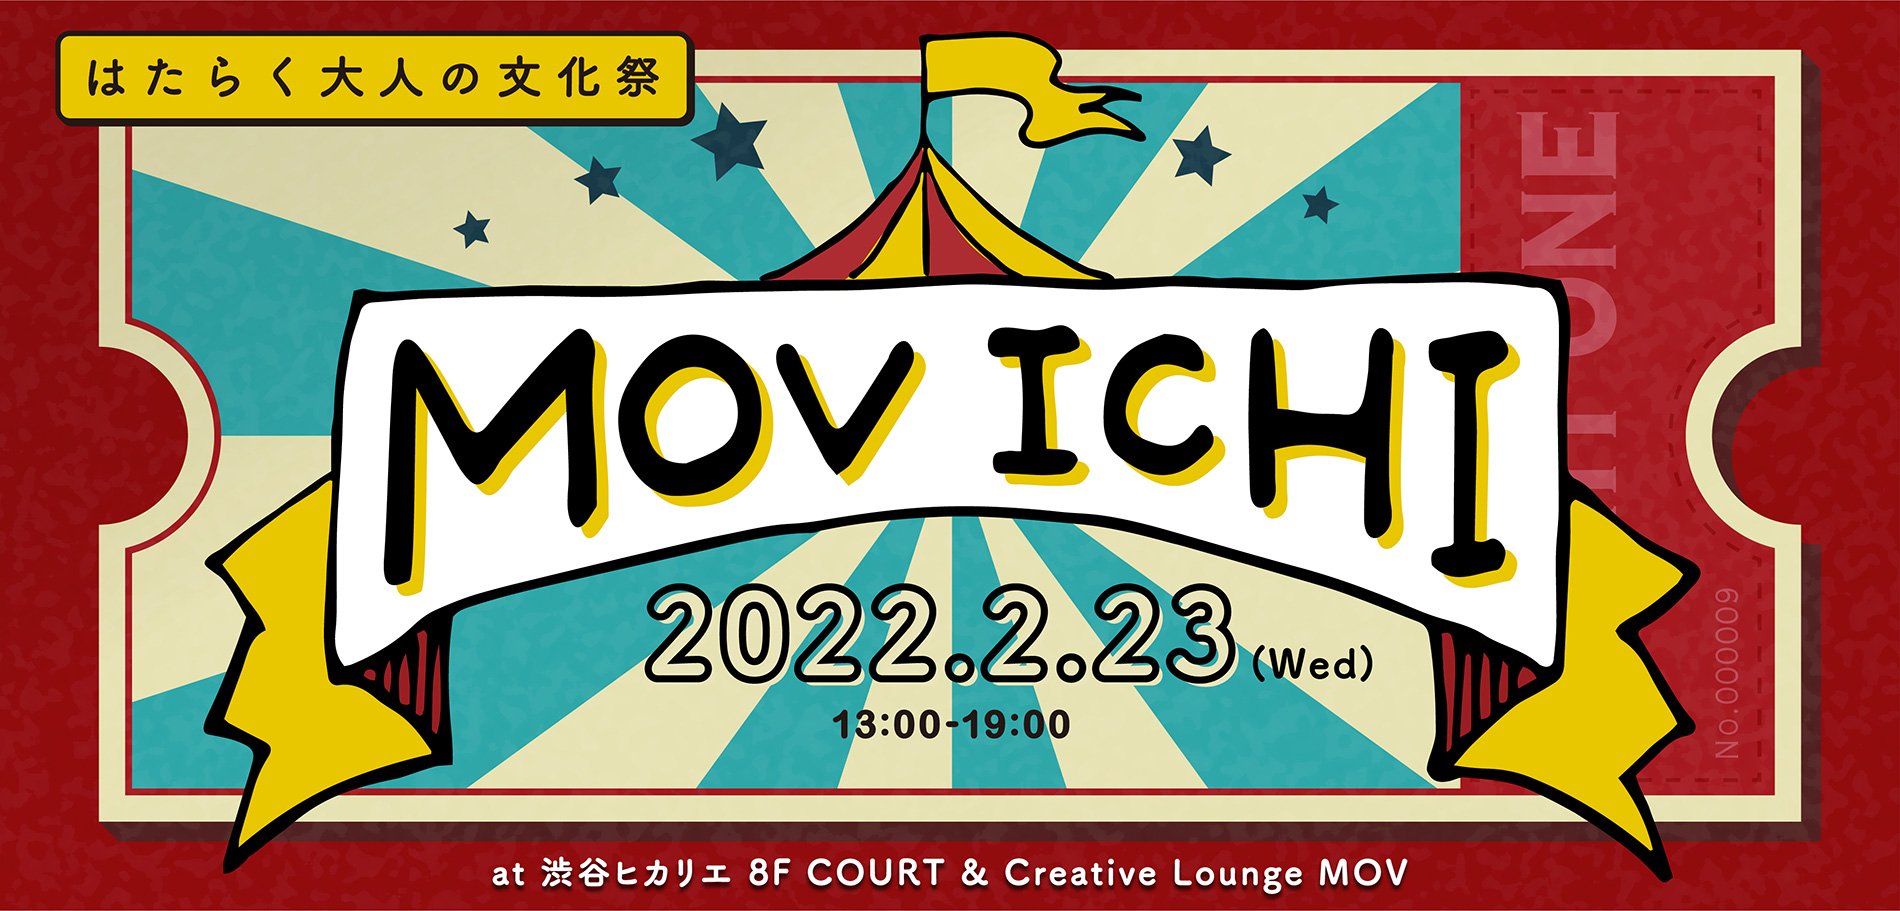 movichi2022_mainPC.jpg